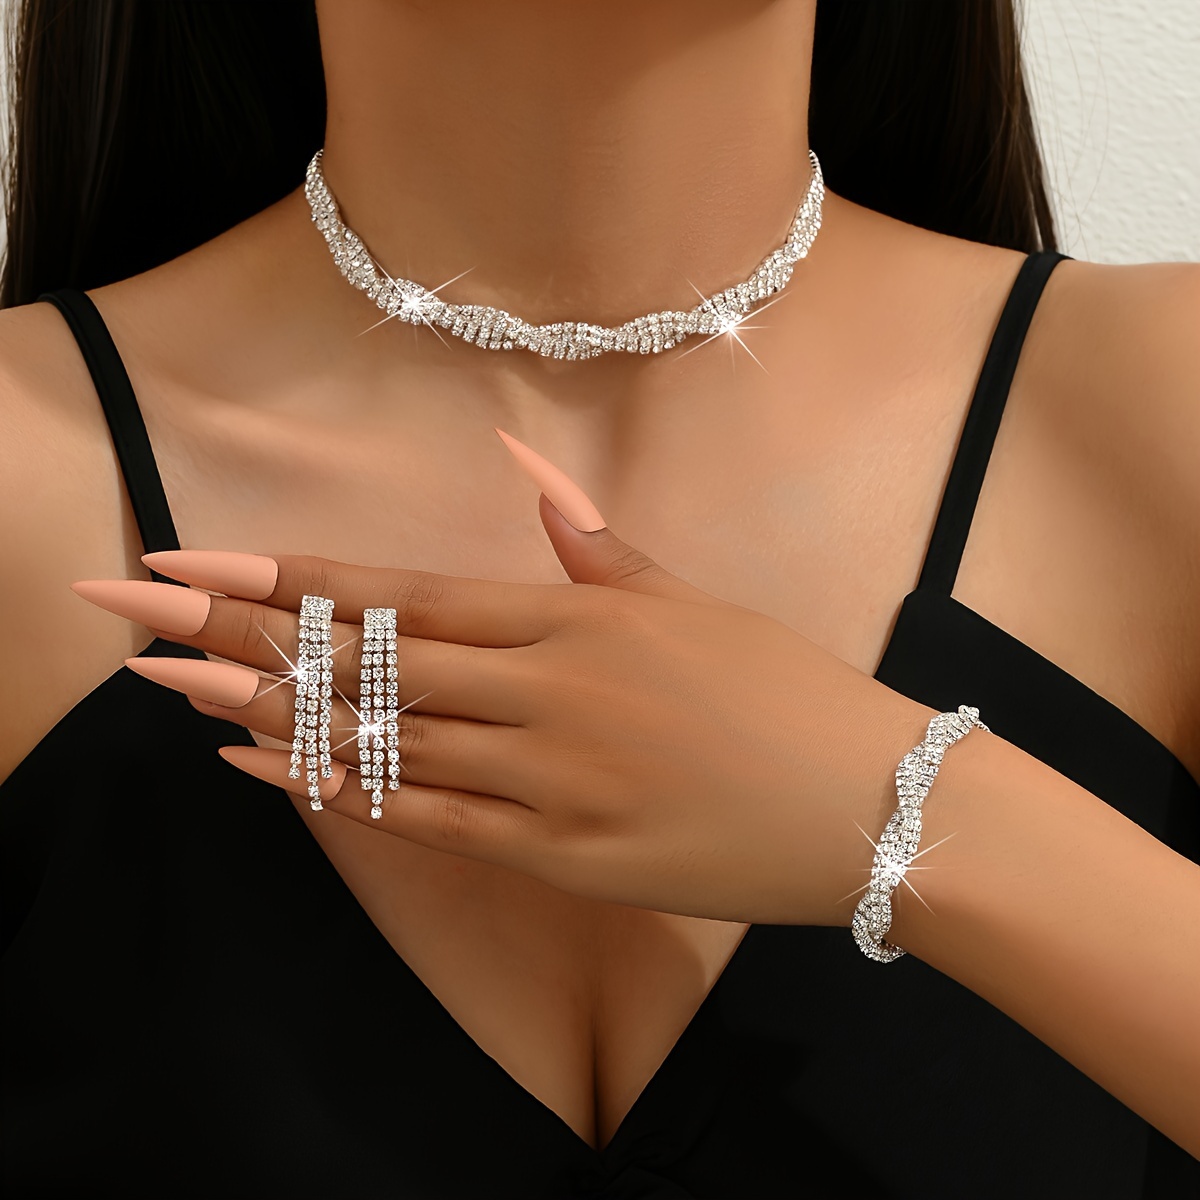 

Women's Glamorous Rhinestone Twist Jewelry Set, 3-piece Bling Party Accessory, Includes Choker Necklace, Earrings, Bracelet